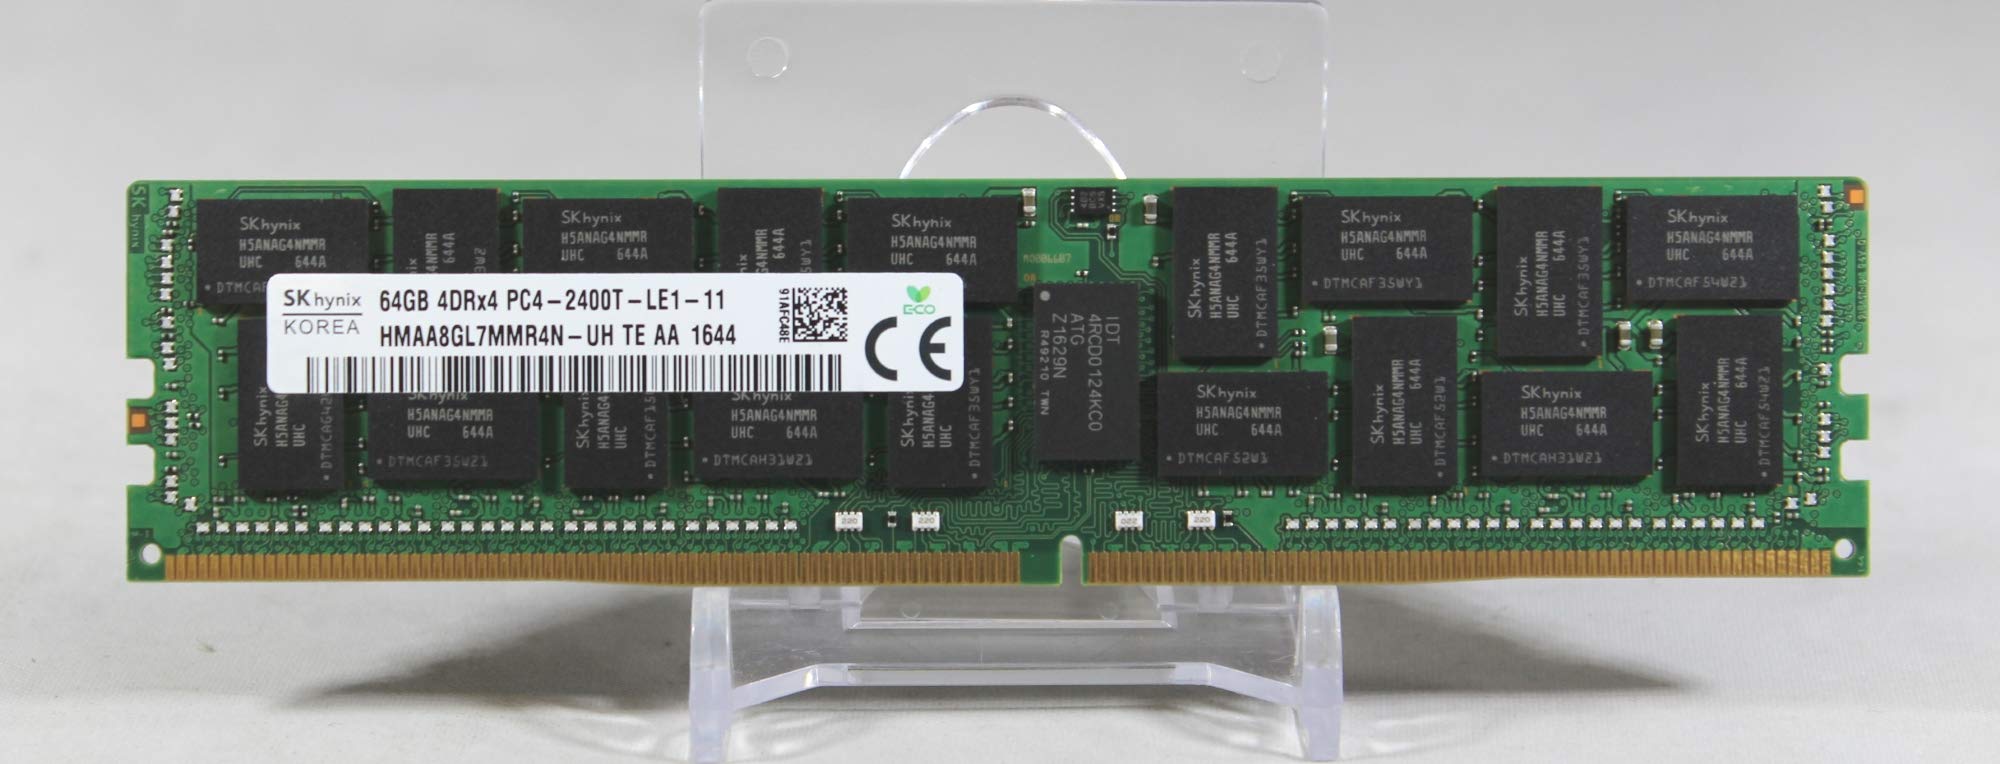 SK hynix 64GB4Gx4 DDR4 2400MHz ECCREG 負荷軽減CL 17 サーバーメモリモデル HMAA8GL7MMR4N-UH並行輸入品